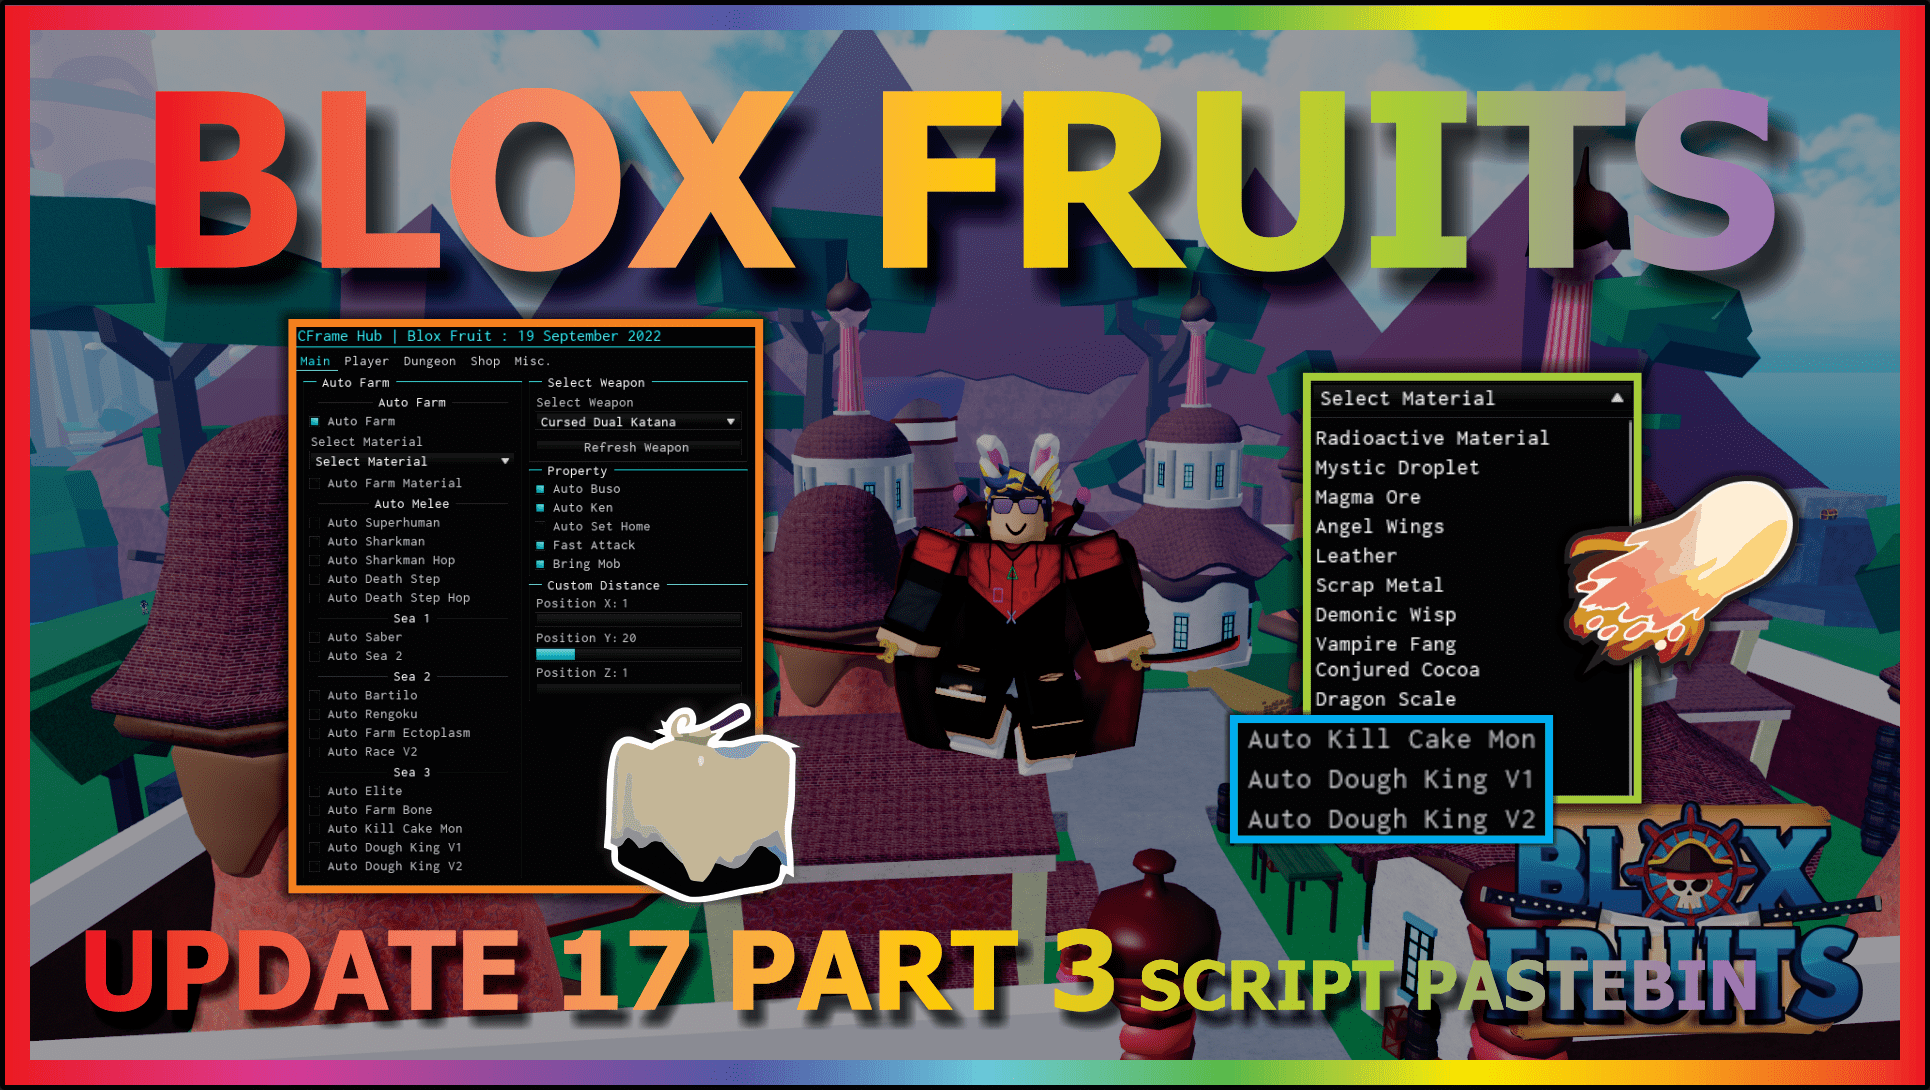 Blox Fruits Pastebin Script - Auto Farm, Race, Auto Saber